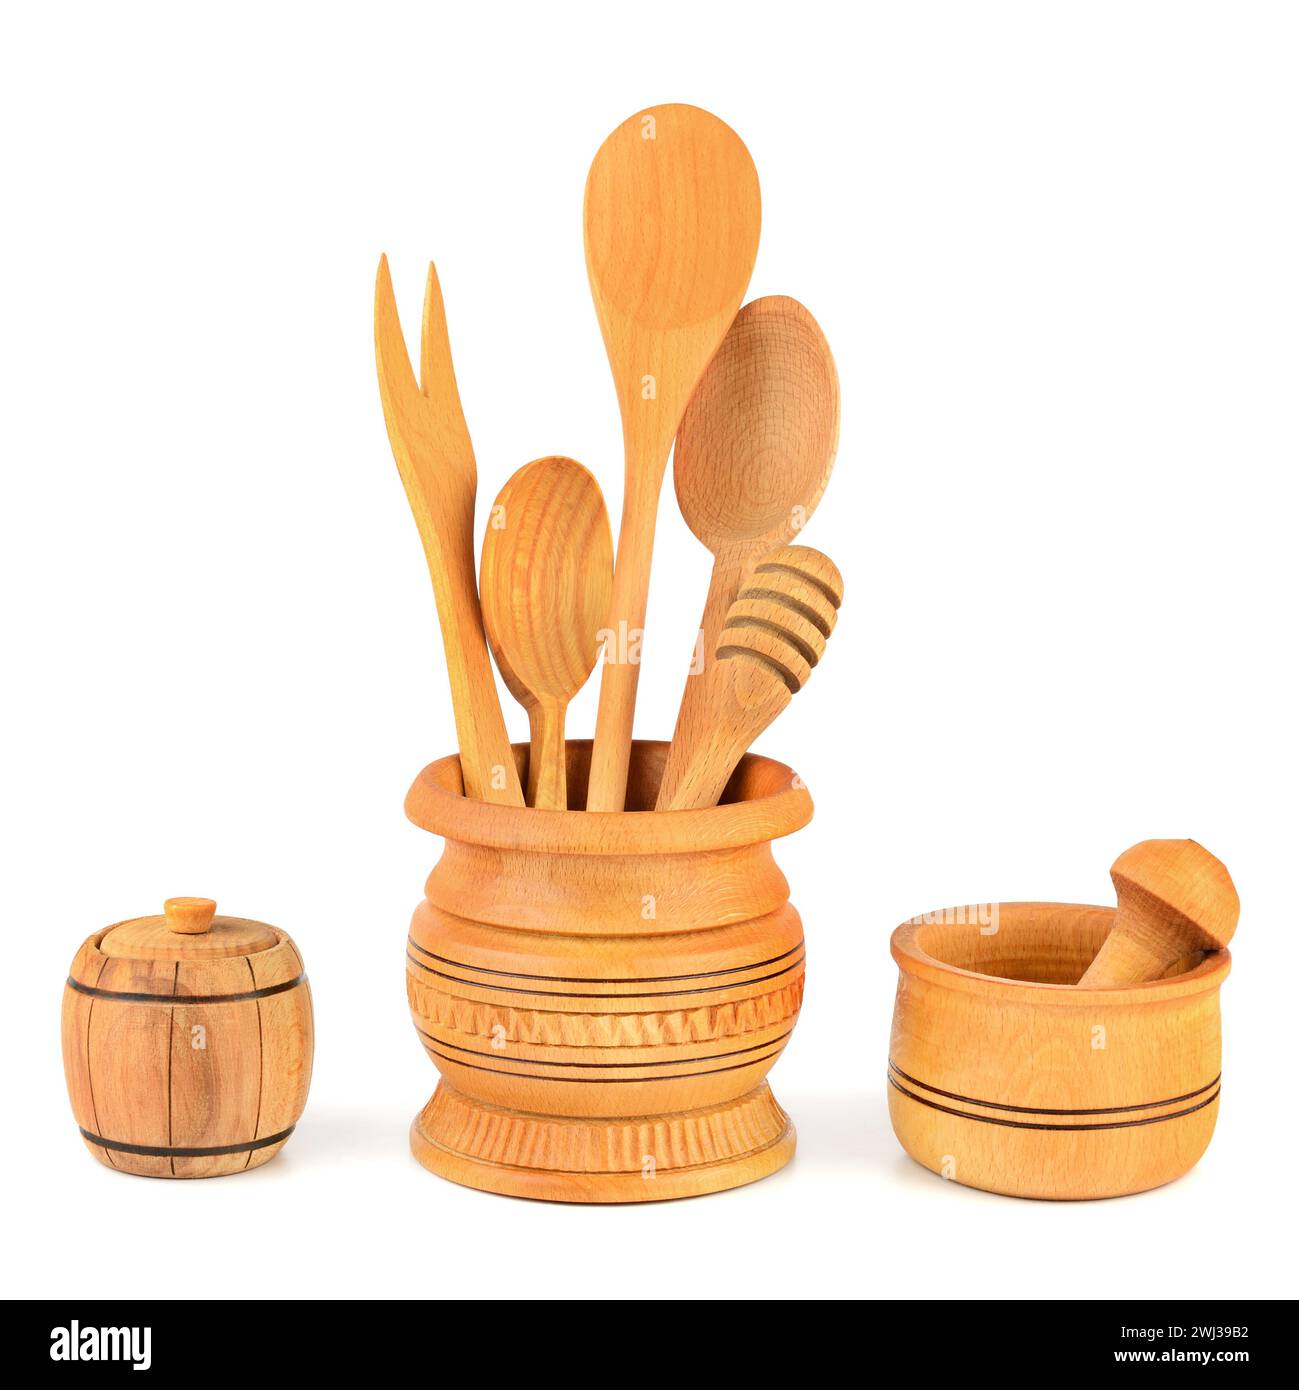 Ustensiles de cuisine en bois (cuillère, fourchette, pilon, mortier) isolés sur fond blanc. Banque D'Images